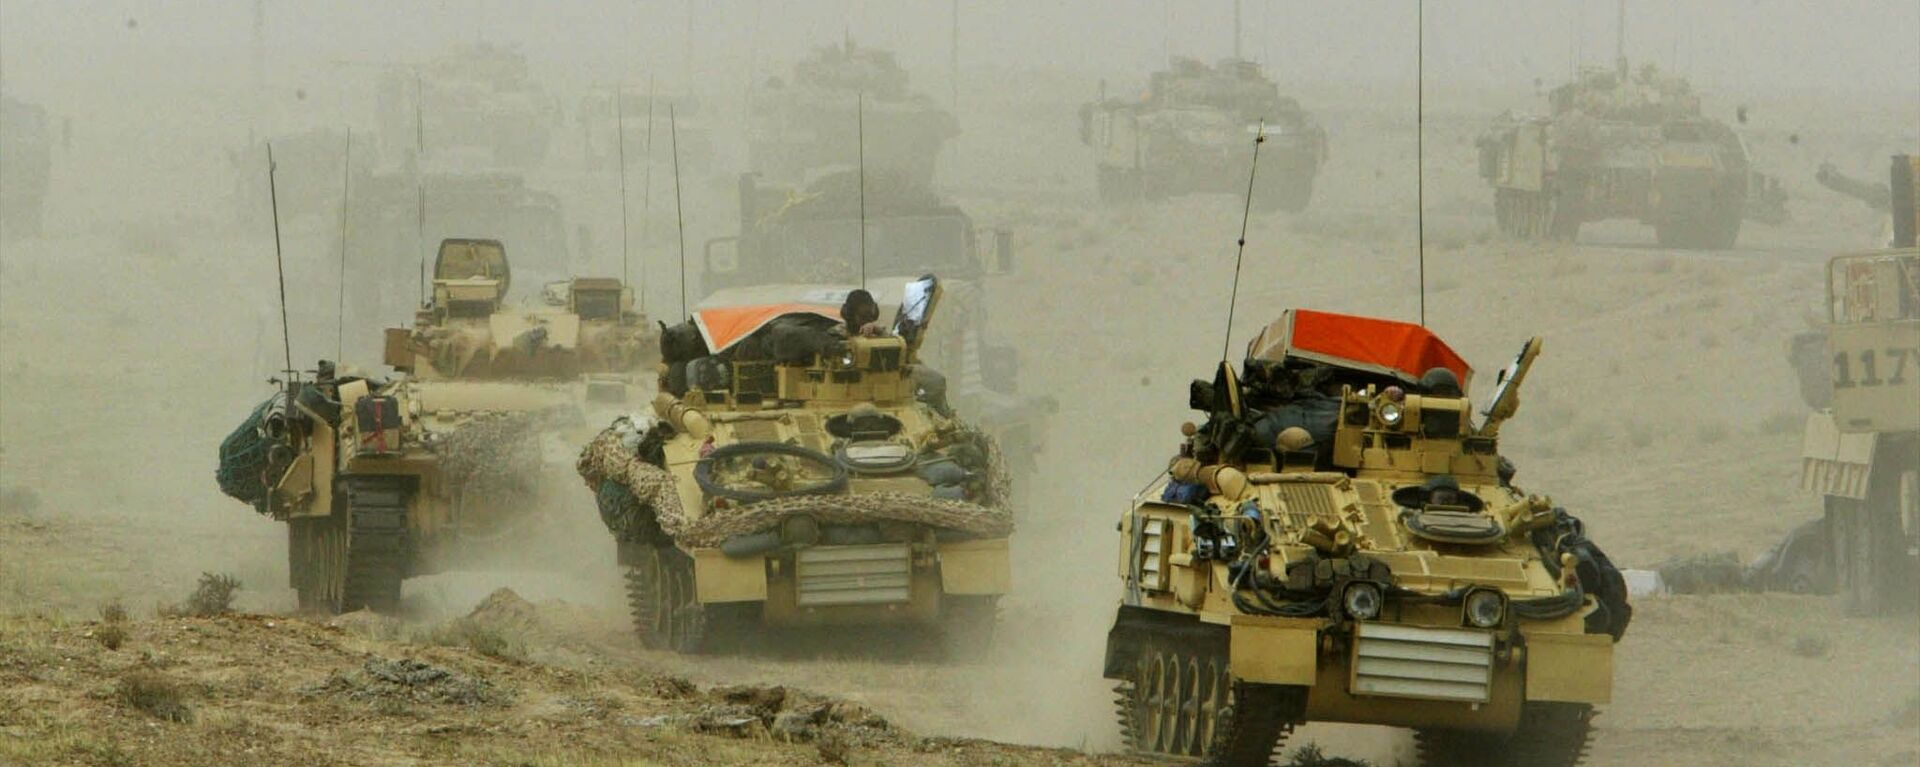 غزو العراق 2003 - سبوتنيك عربي, 1920, 08.09.2016